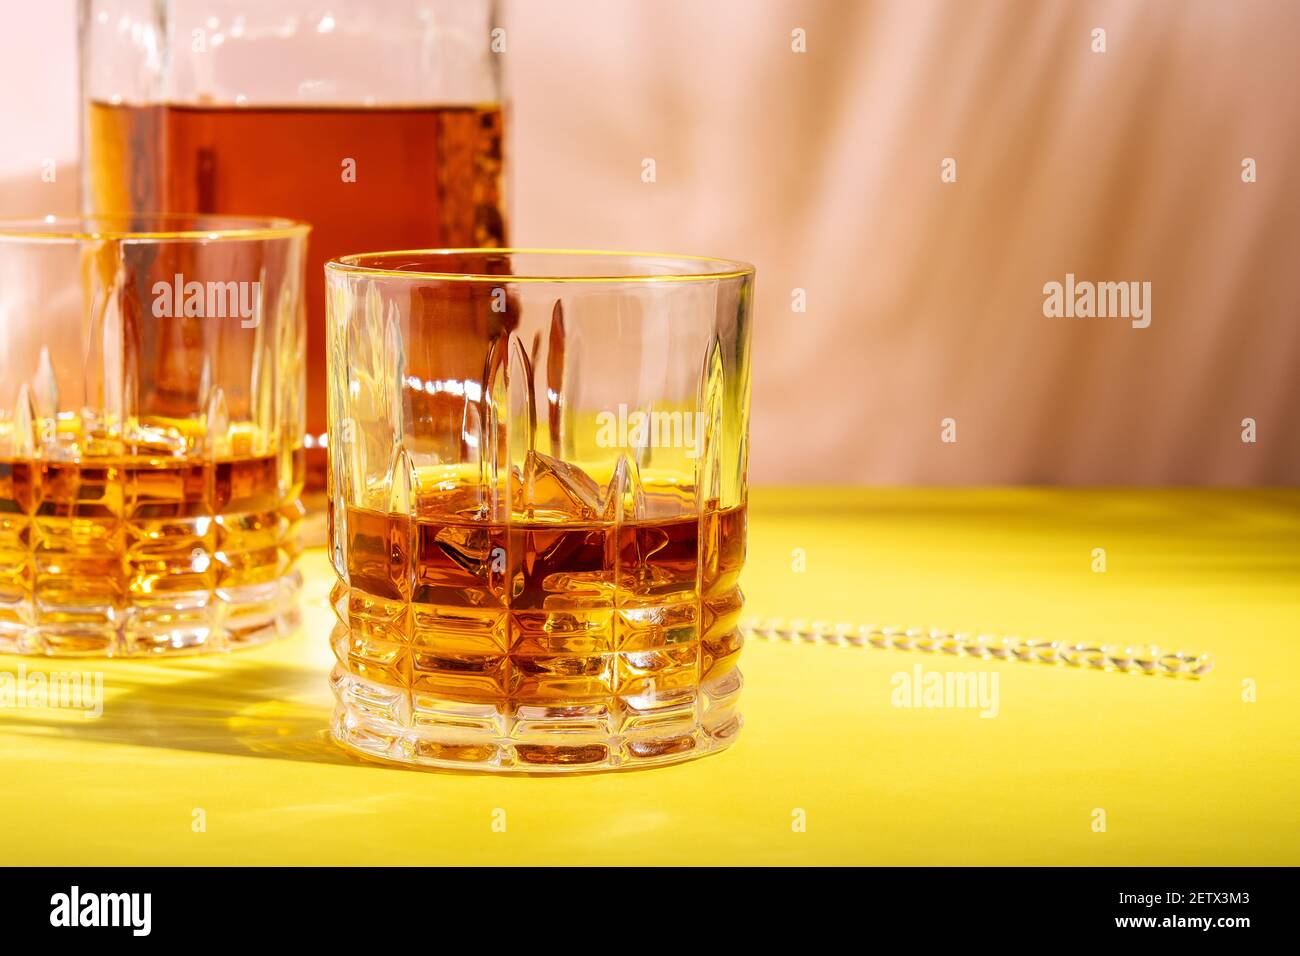 Le rhum ou l'Amaretto s'aigre avec de la glace dans un verre sur un fond lumineux. Concept de fête d'été. Banque D'Images